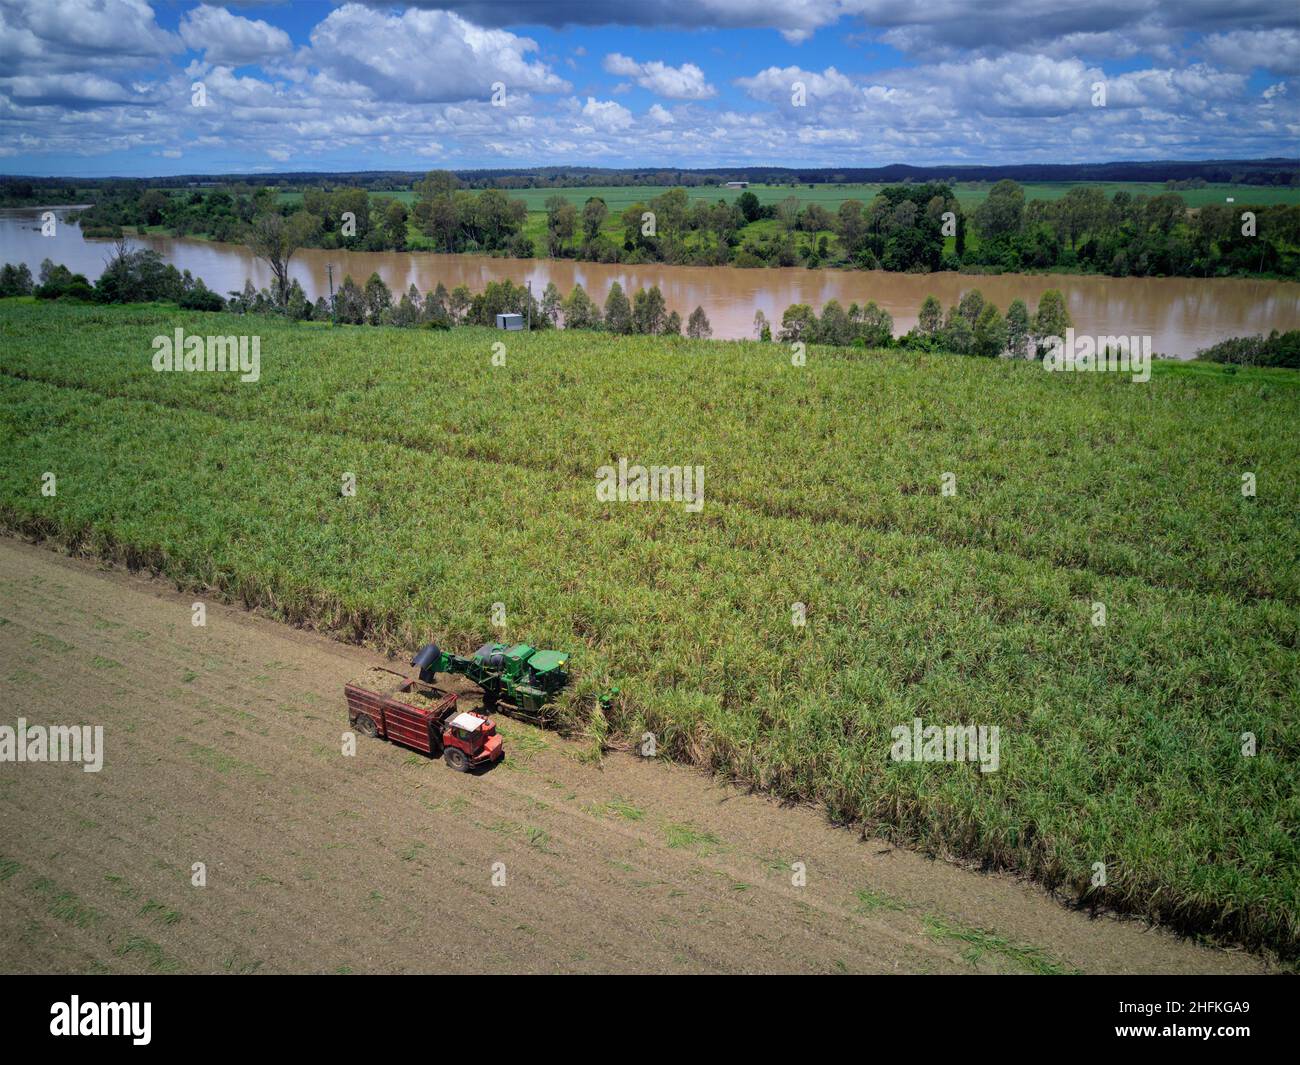 Luftaufnahme der Zuckerrohrernte am Ufer des Burnett River Wallaville Queensland Australien Stockfoto